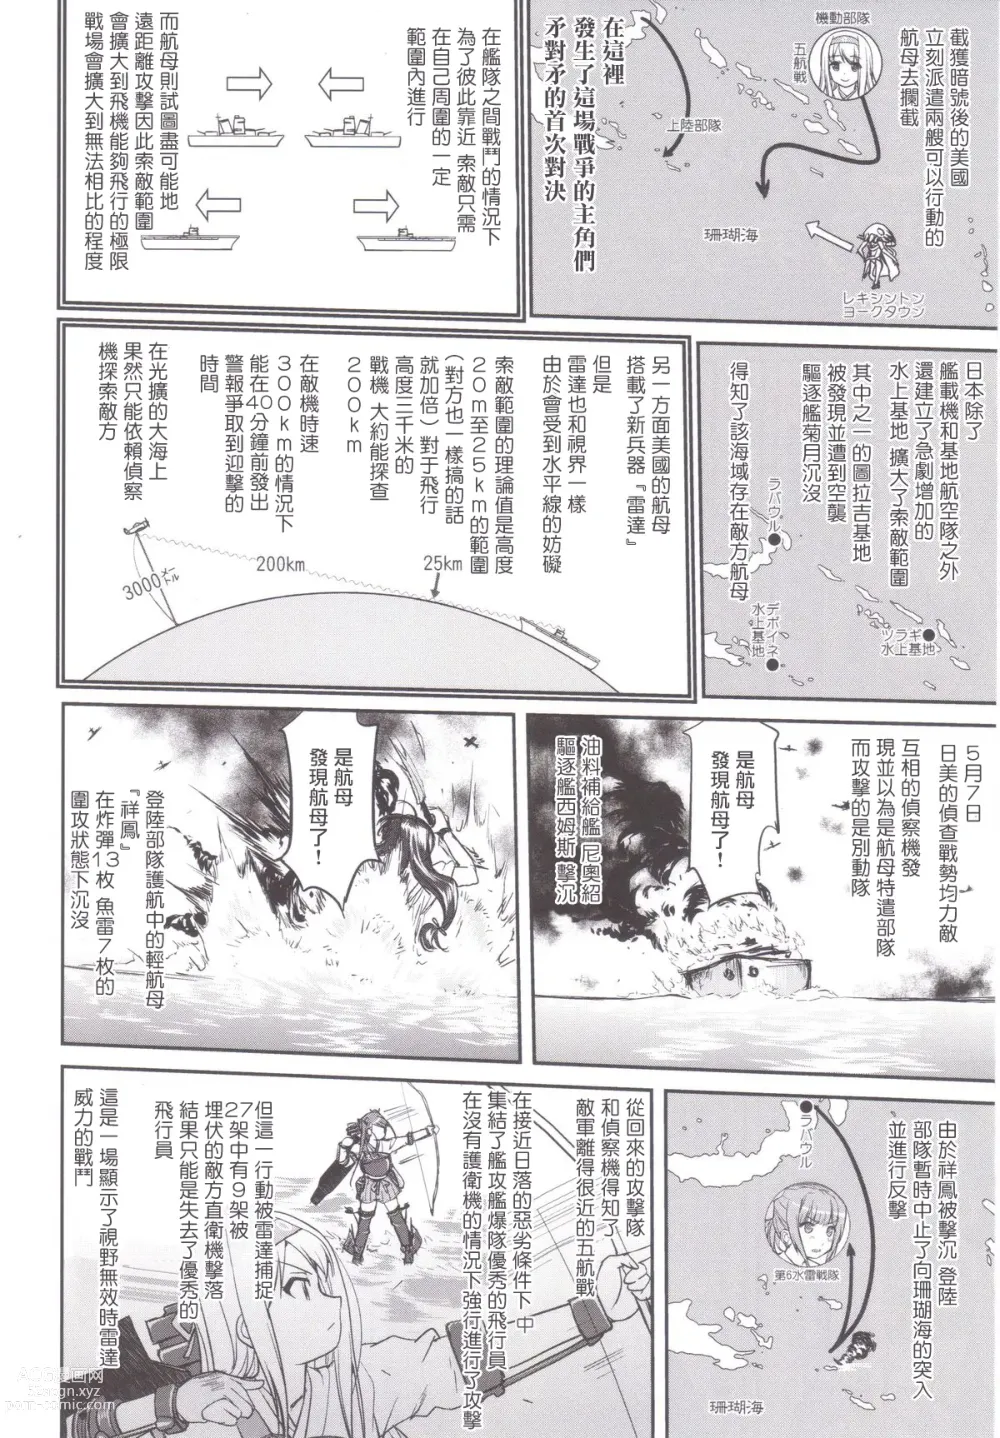 Page 39 of doujinshi Teitoku no Ketsudan MIDWAY